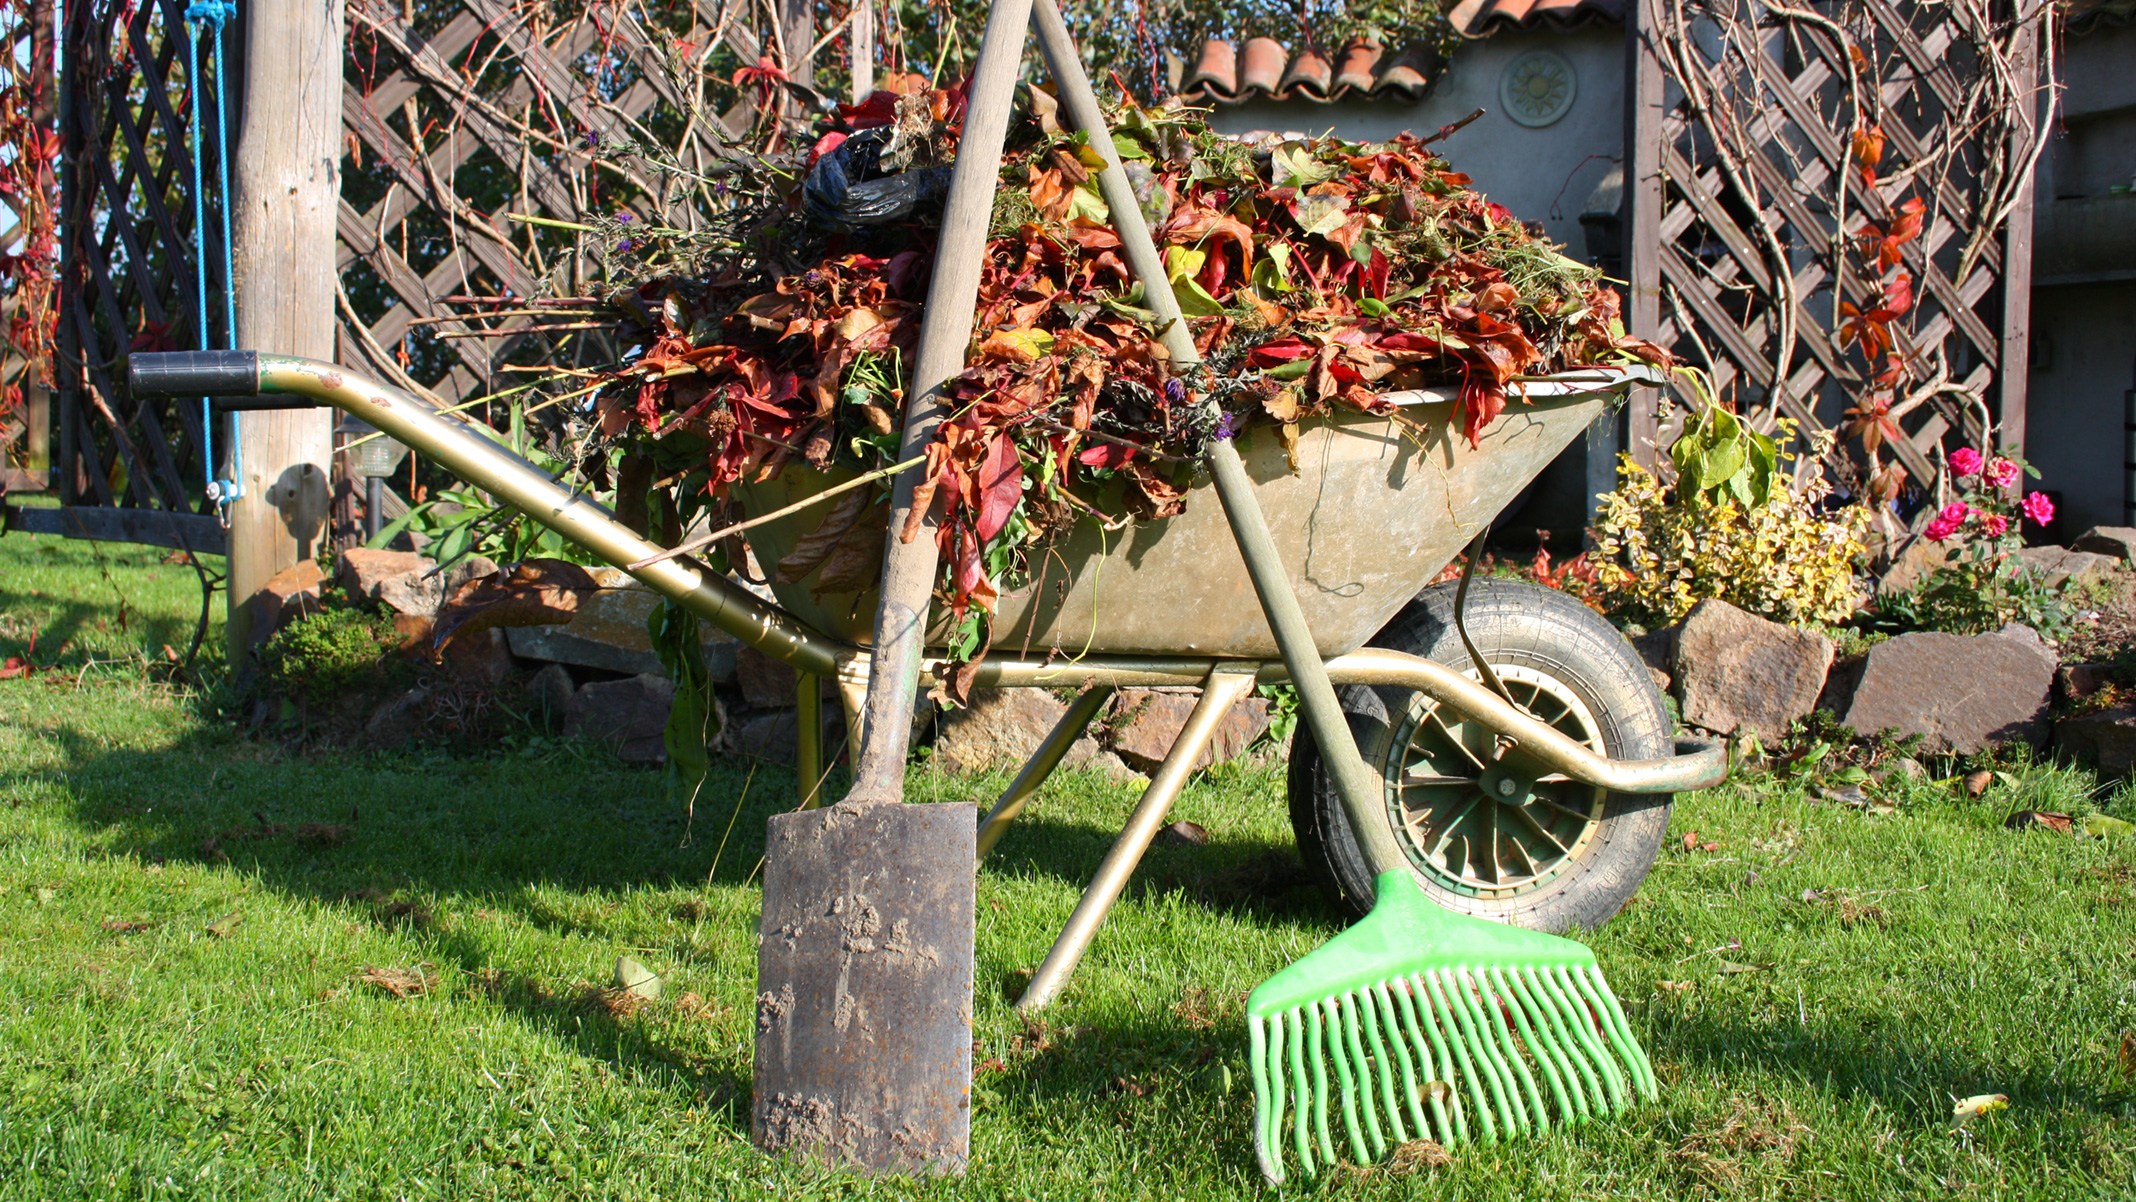 Herbstlaub mit Rechen und Schaufel in der Schubkarre sammeln.